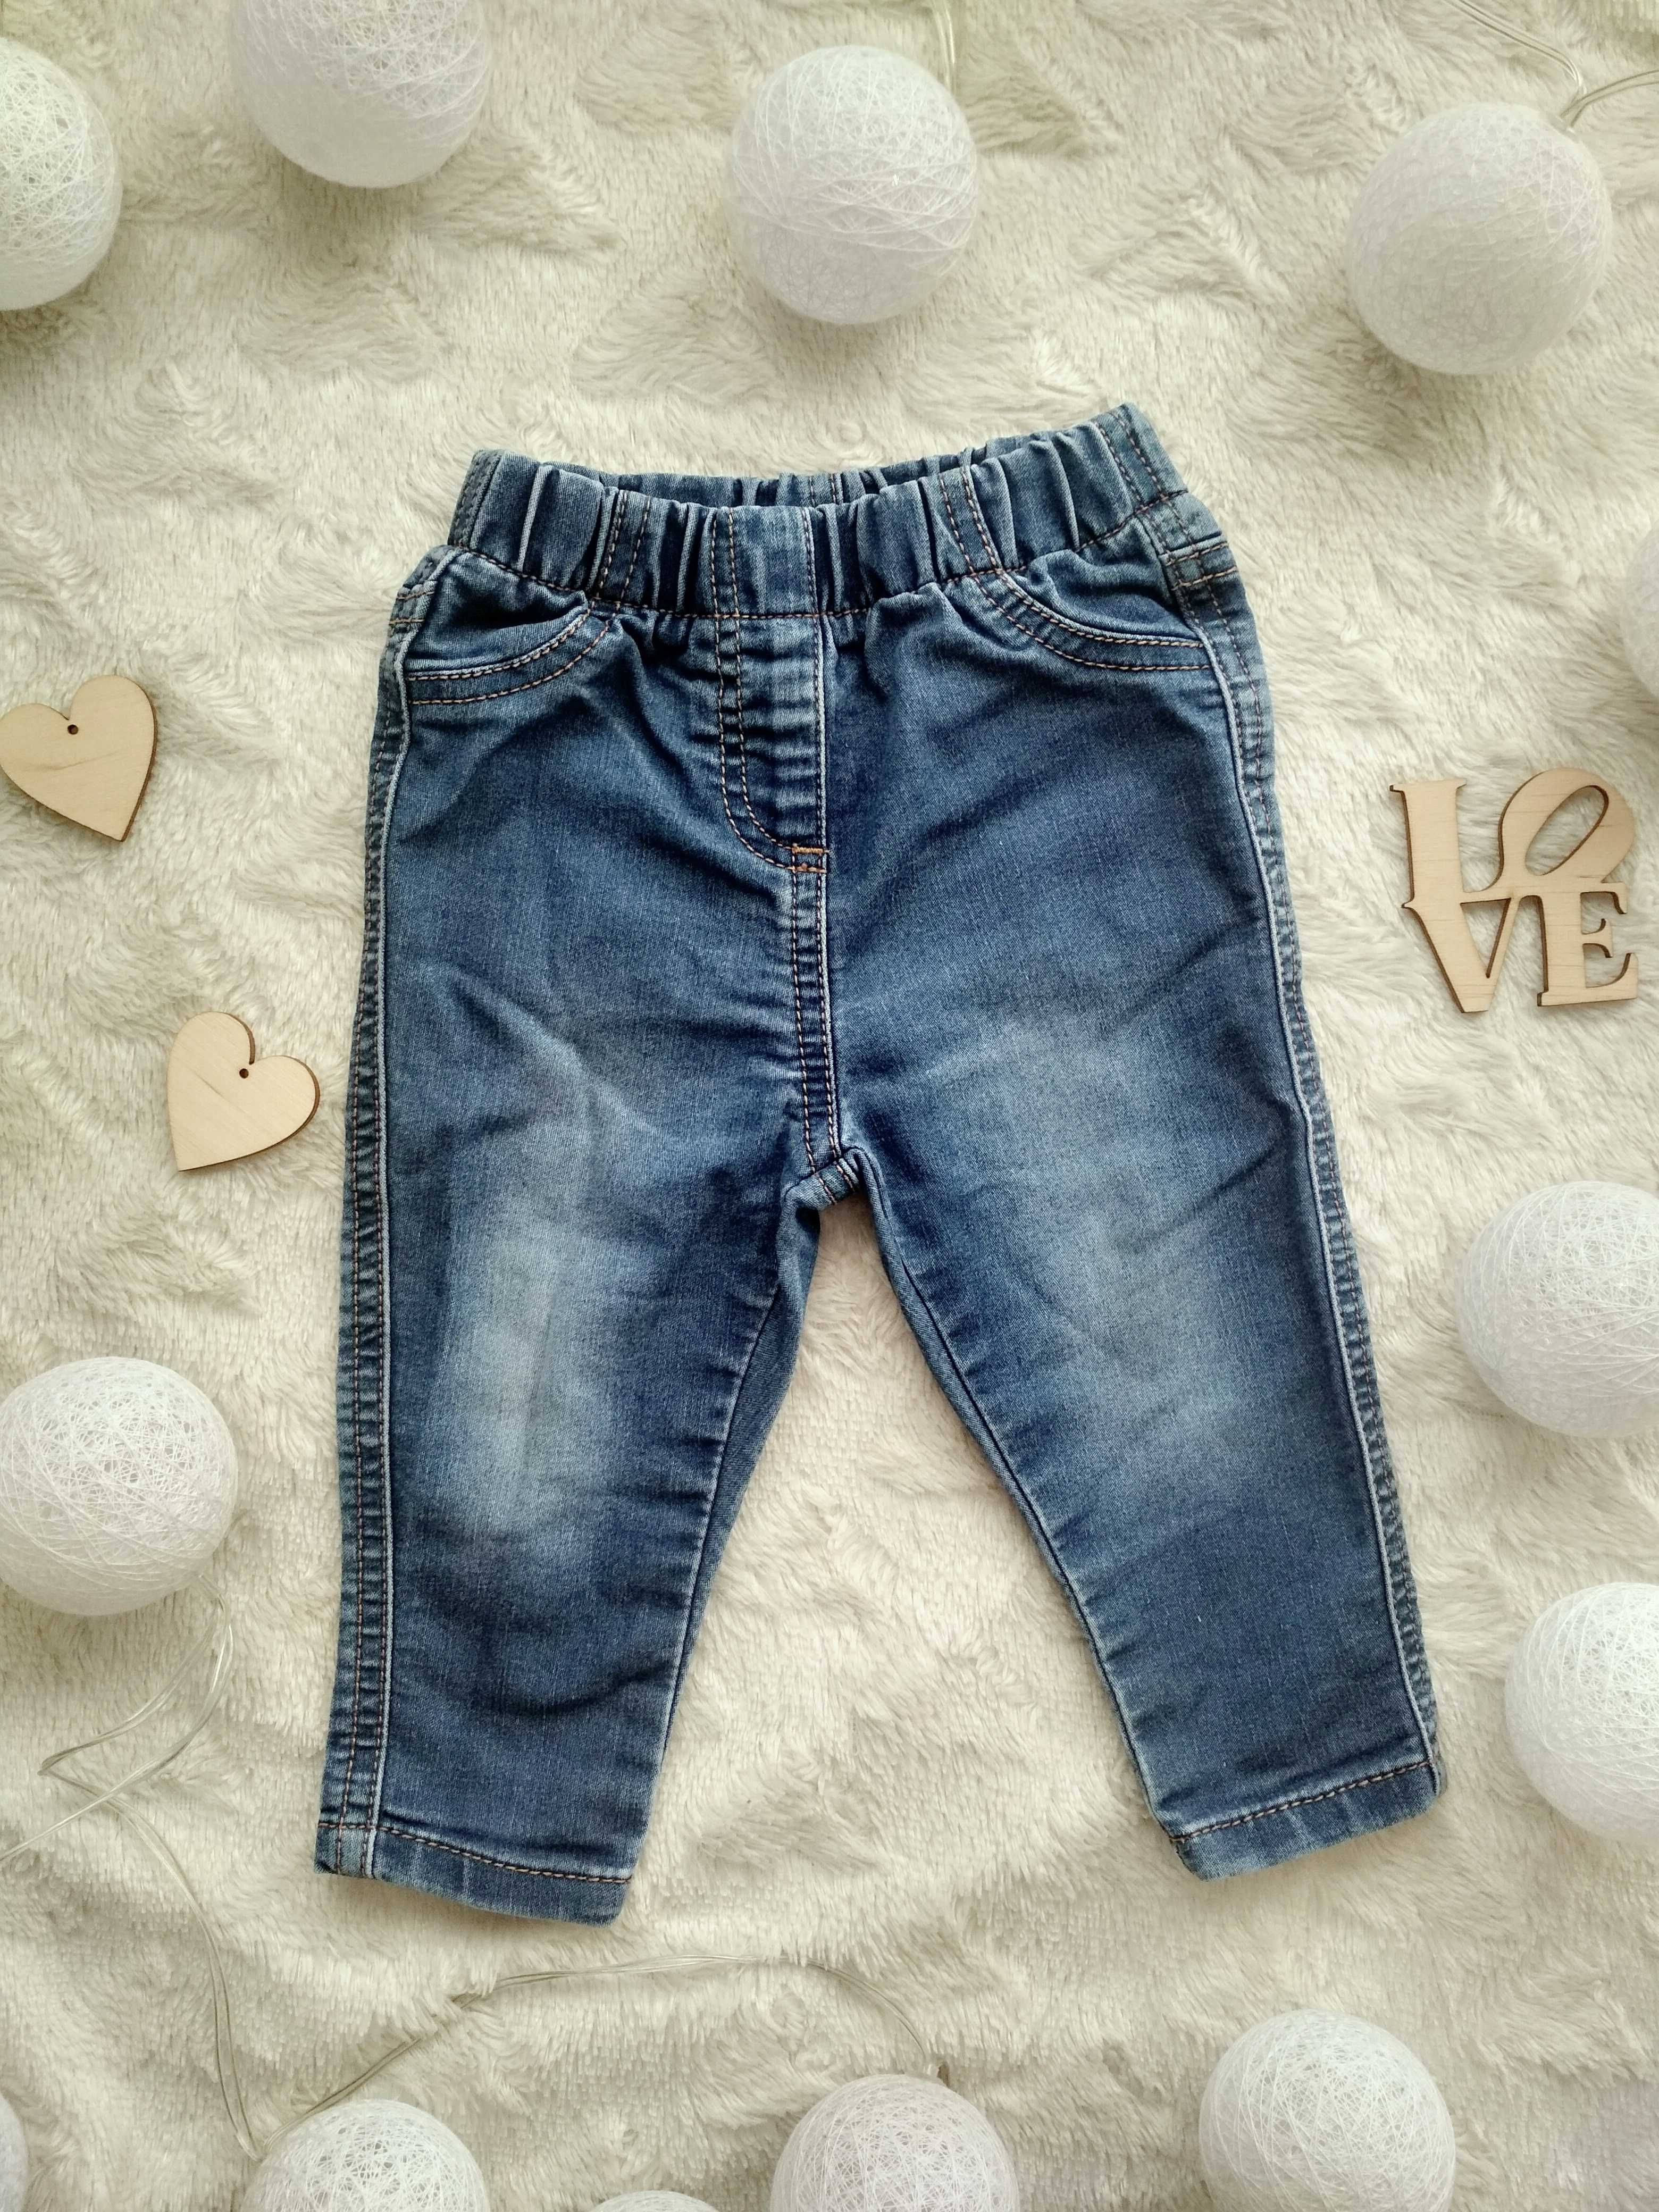 Spodenki spodnie dżinsowe dżinsy jeansy 6-9 miesięcy 74